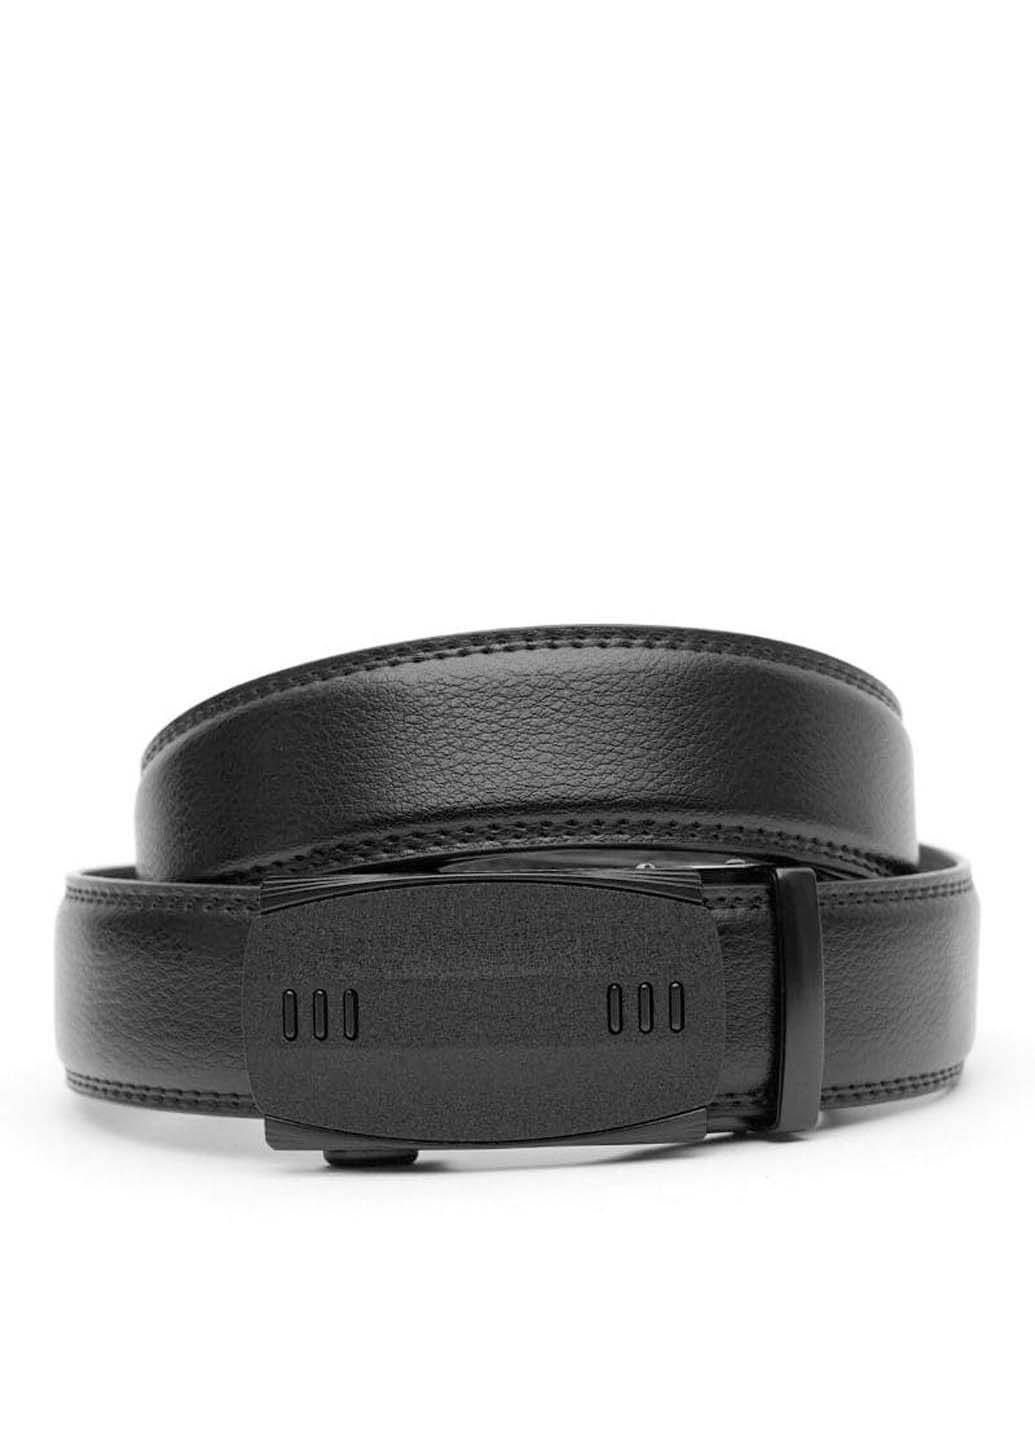 Ремень Borsa Leather v1gkx32-black (285696688)